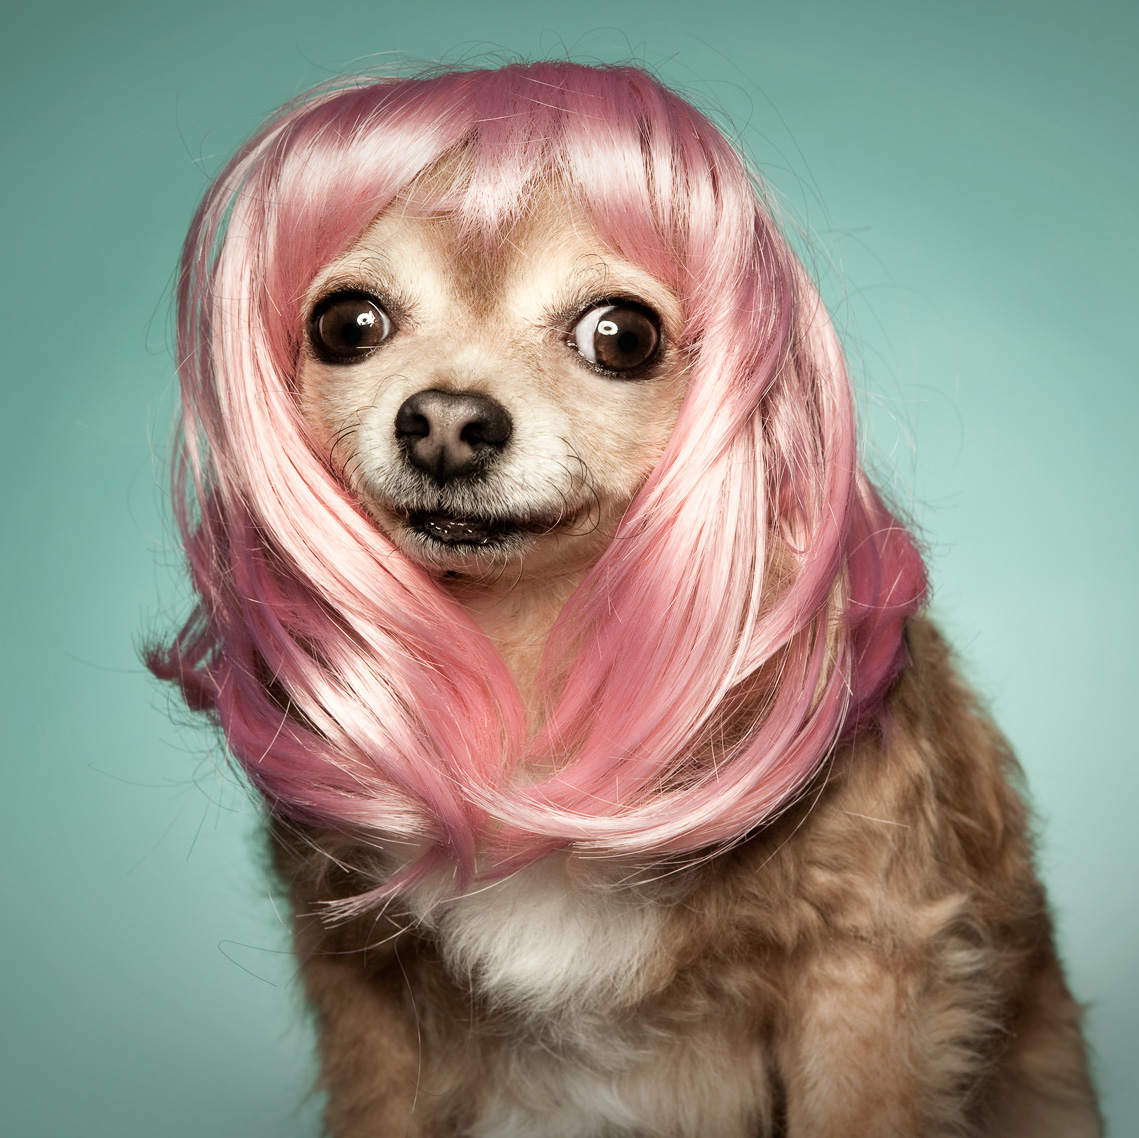 Dog wearing wig